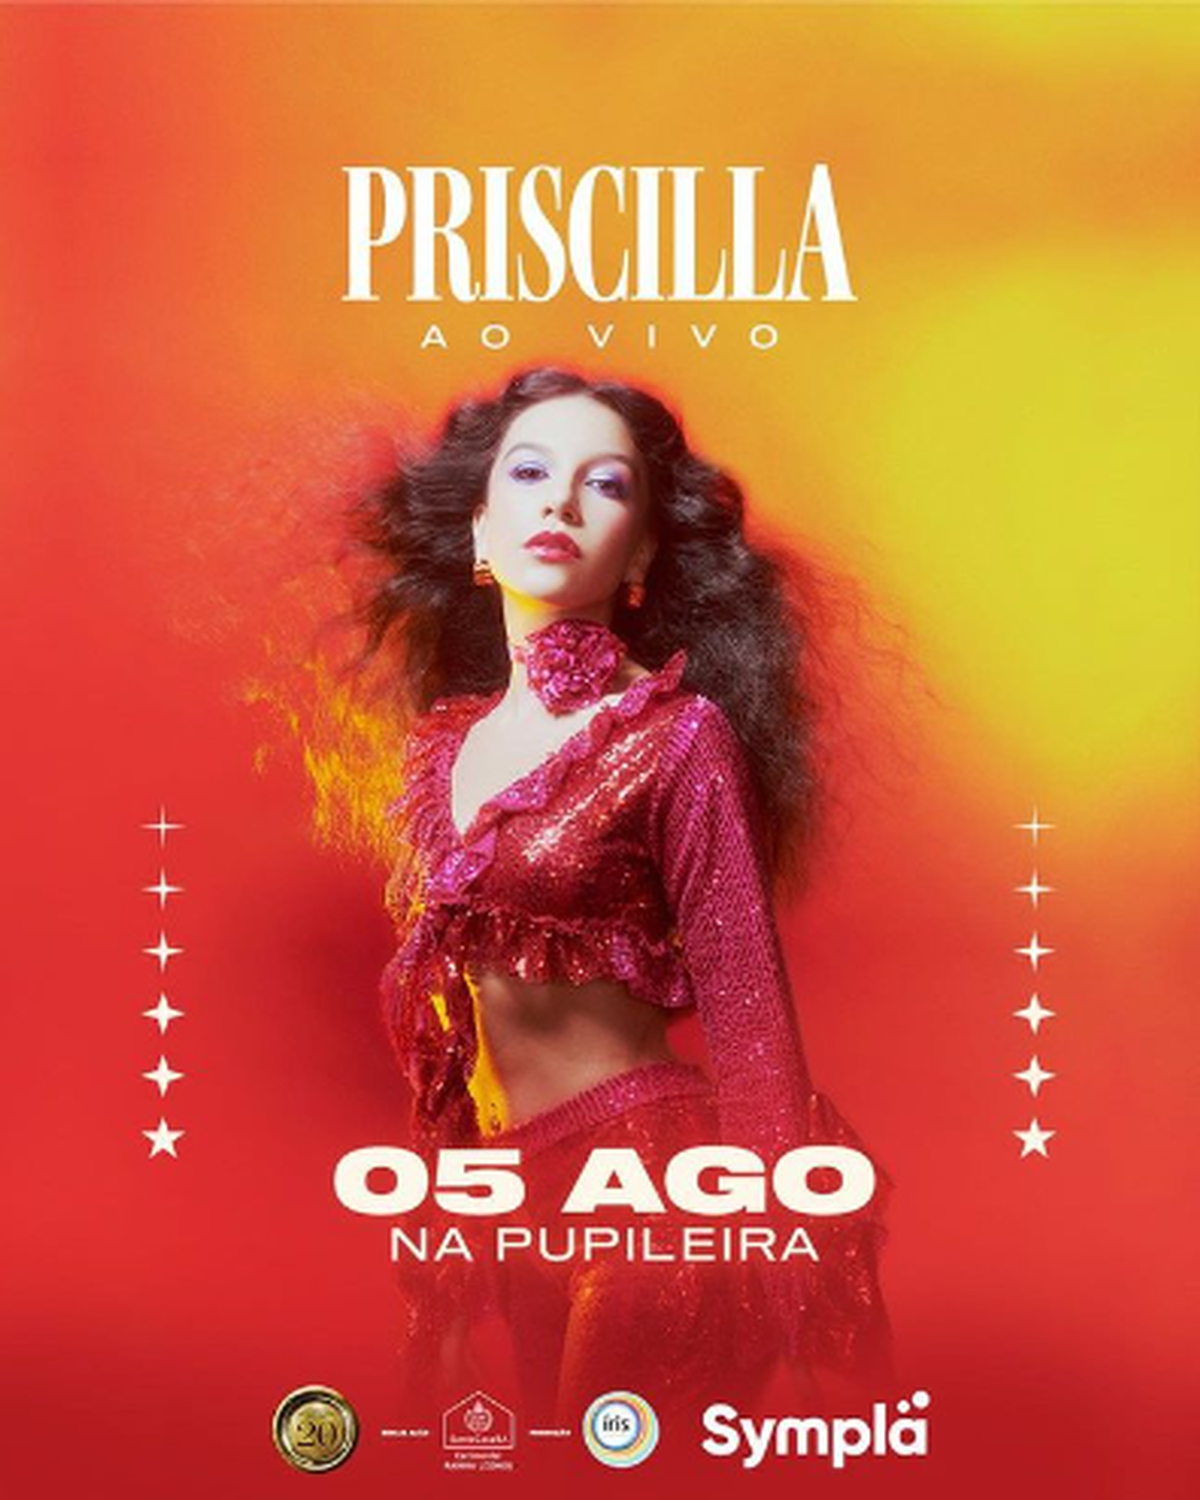 Priscilla Alcantara estreia nova turnê em Salvador na Pupileira